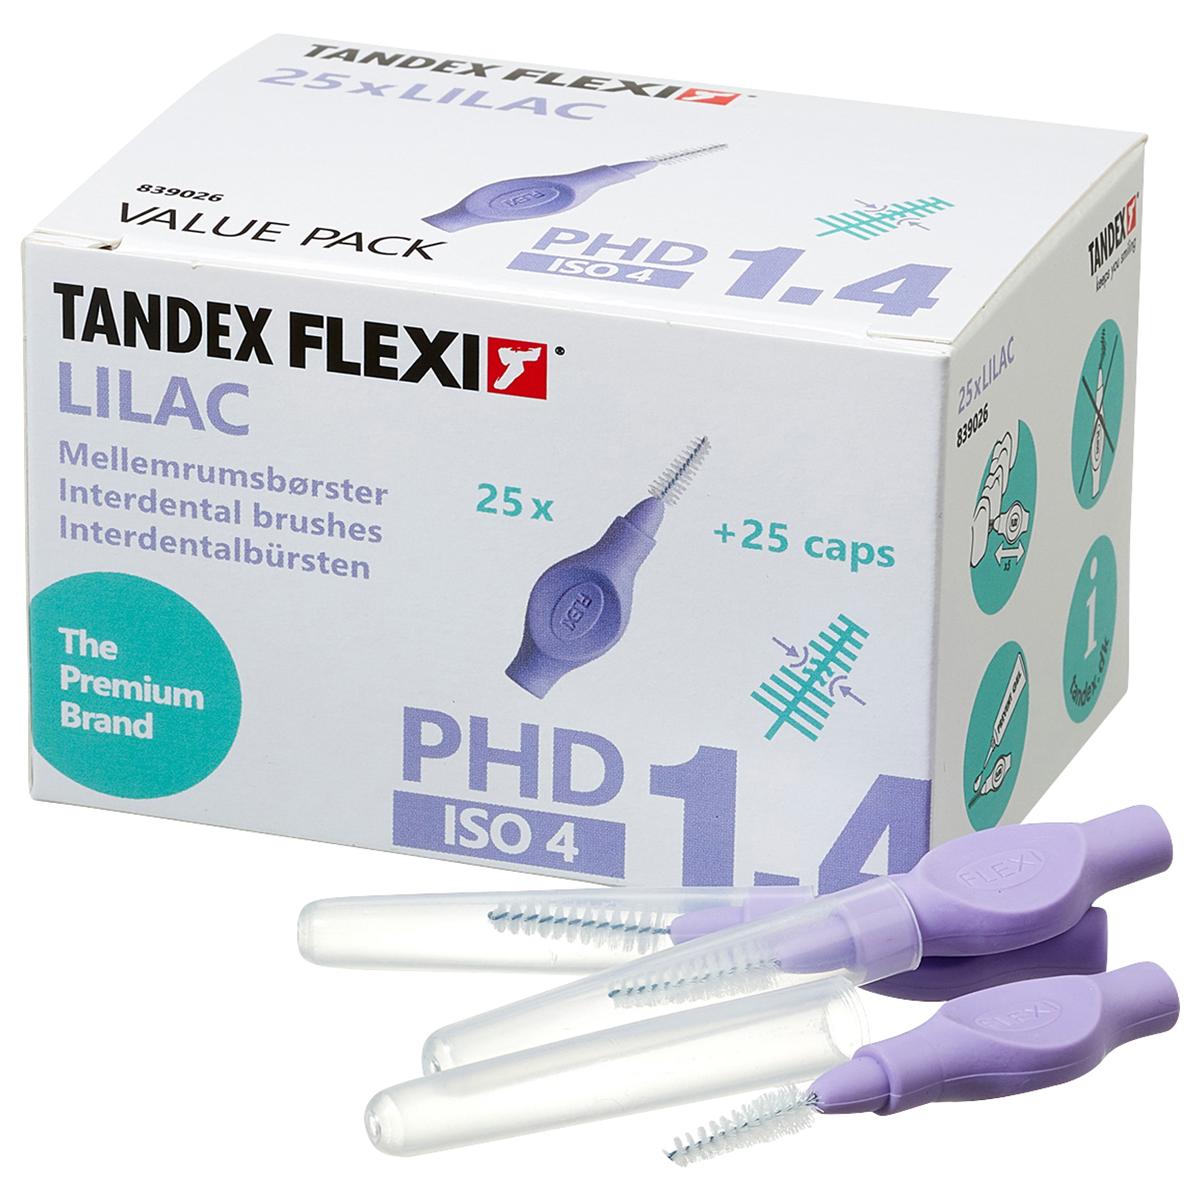 Flexi Interdentalbürsten - Value Pack - Lilac - X-Fine (konisch), Bürsten-Ø 1,4 mm, Draht-Ø 0,80 mm